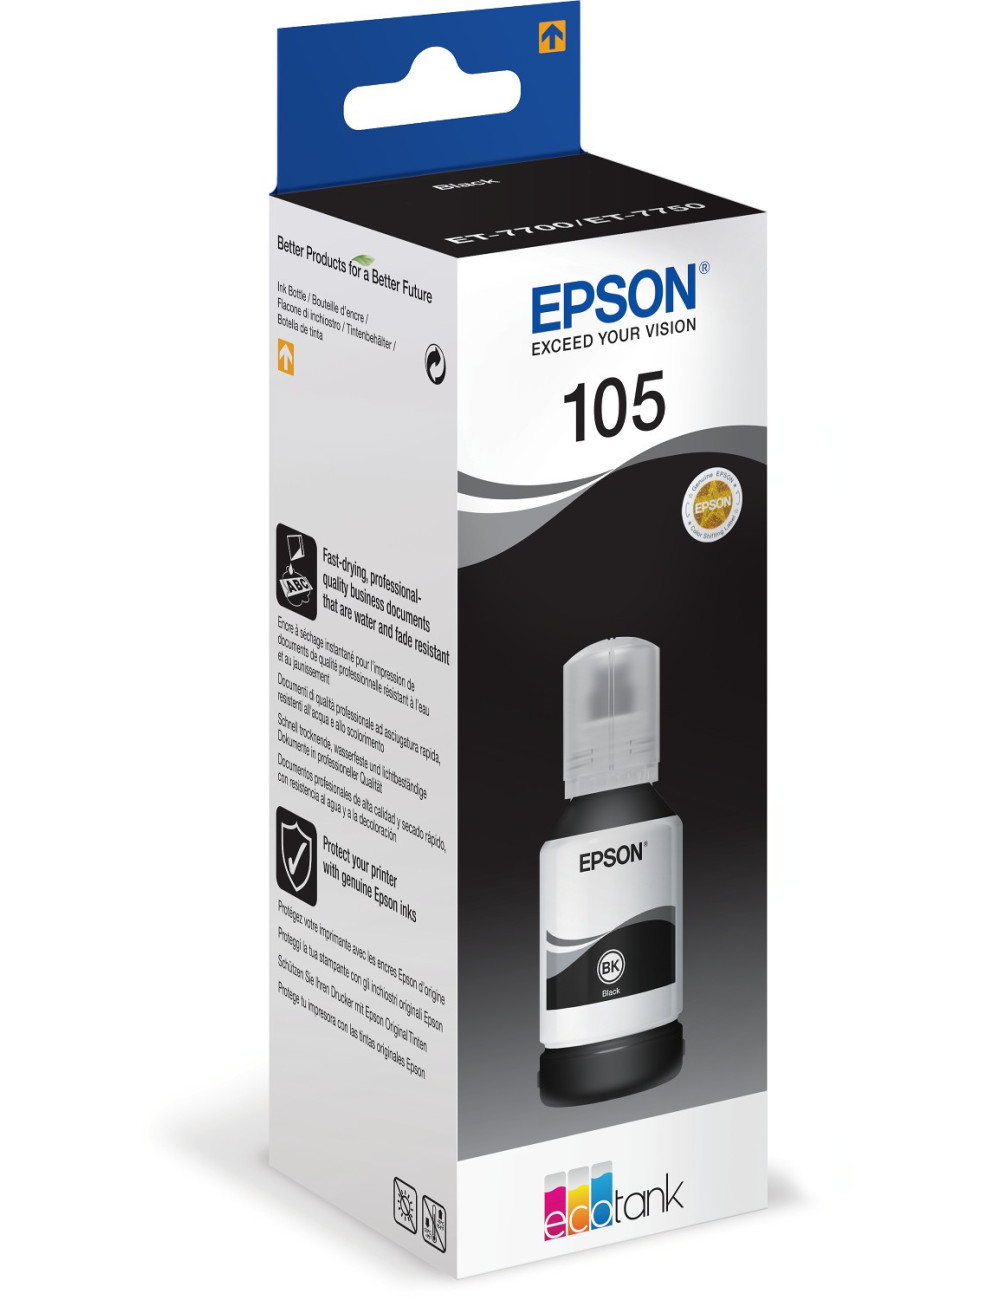 Epson Ecotank 105 Ink Bottle, Black